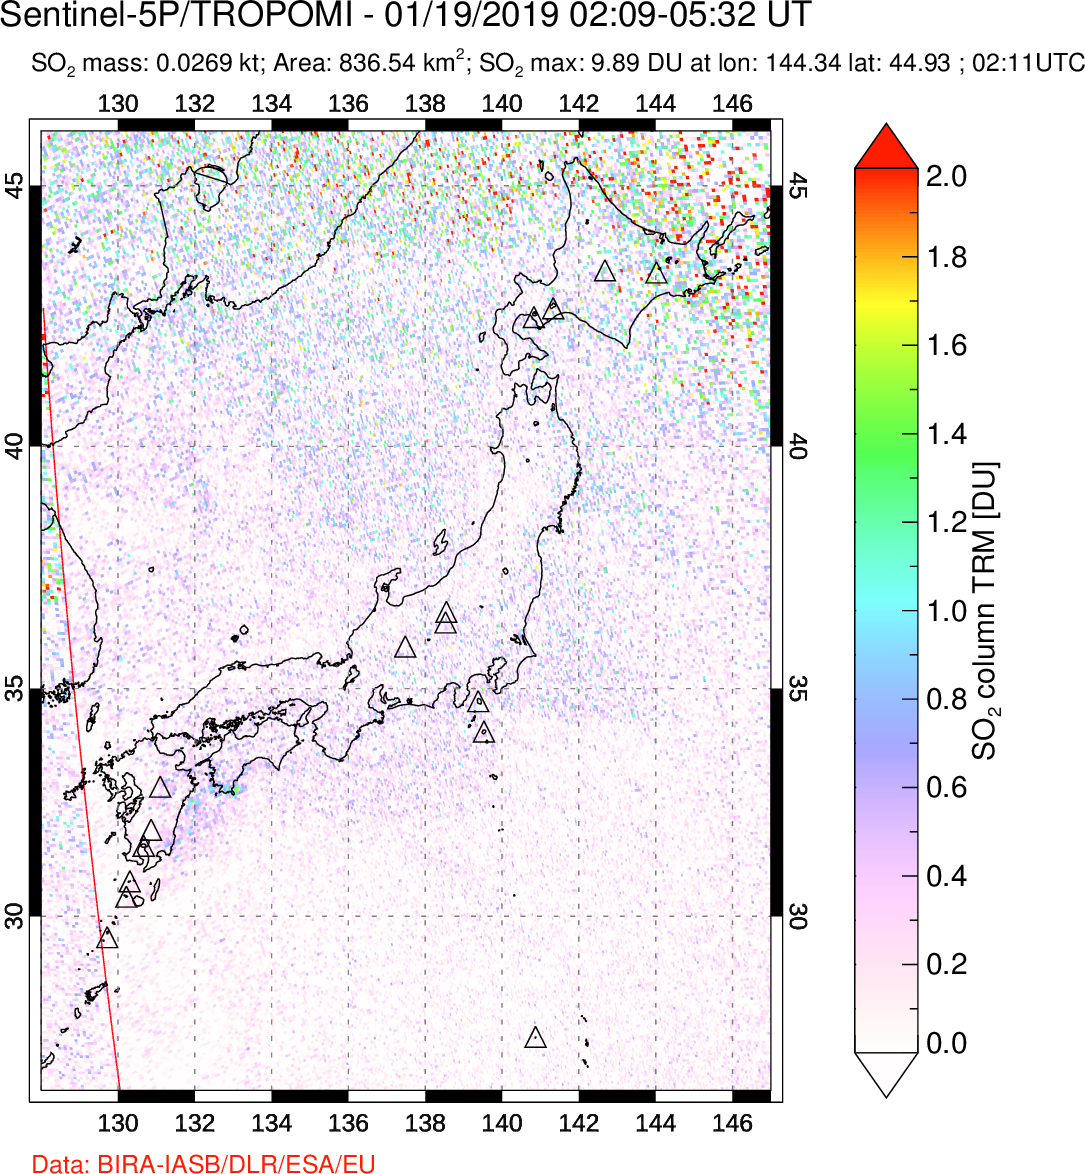 A sulfur dioxide image over Japan on Jan 19, 2019.